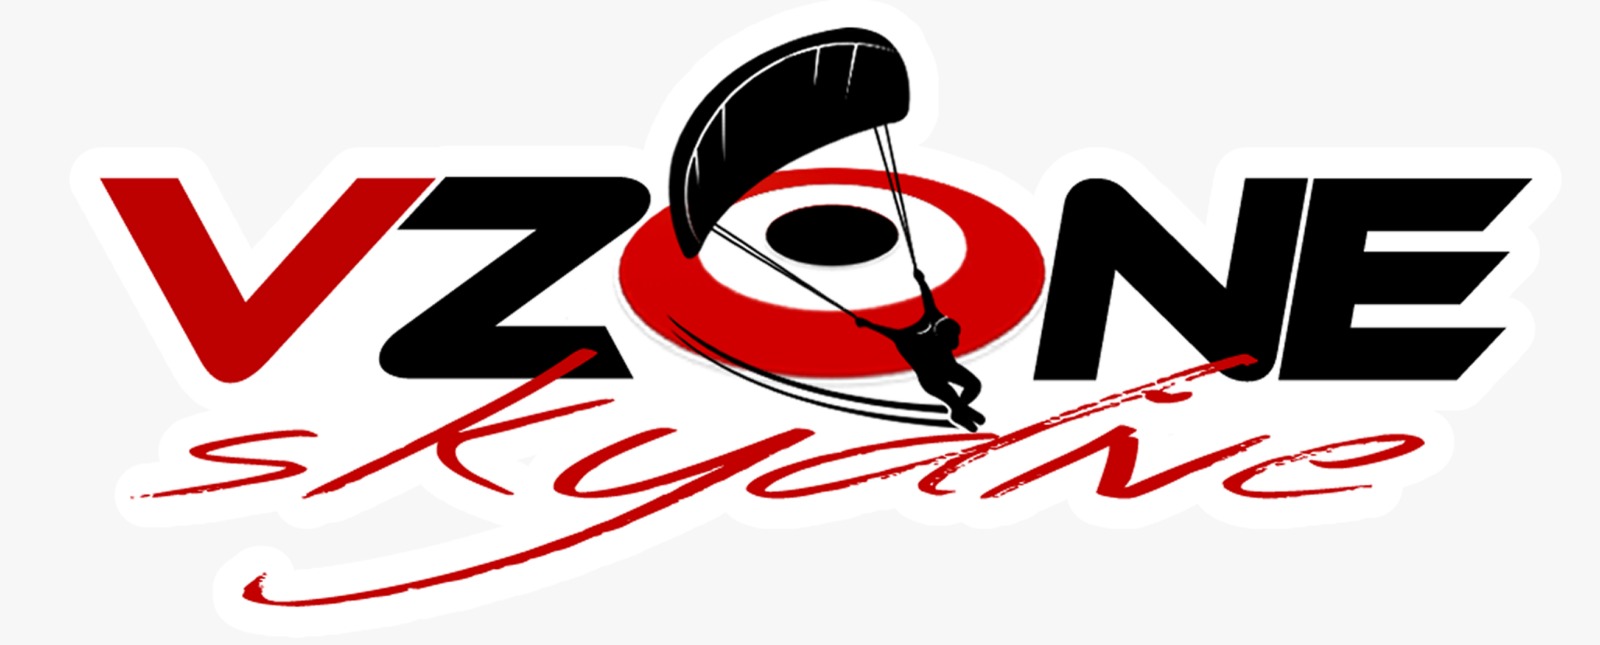 ASD Vzone Skydive logo